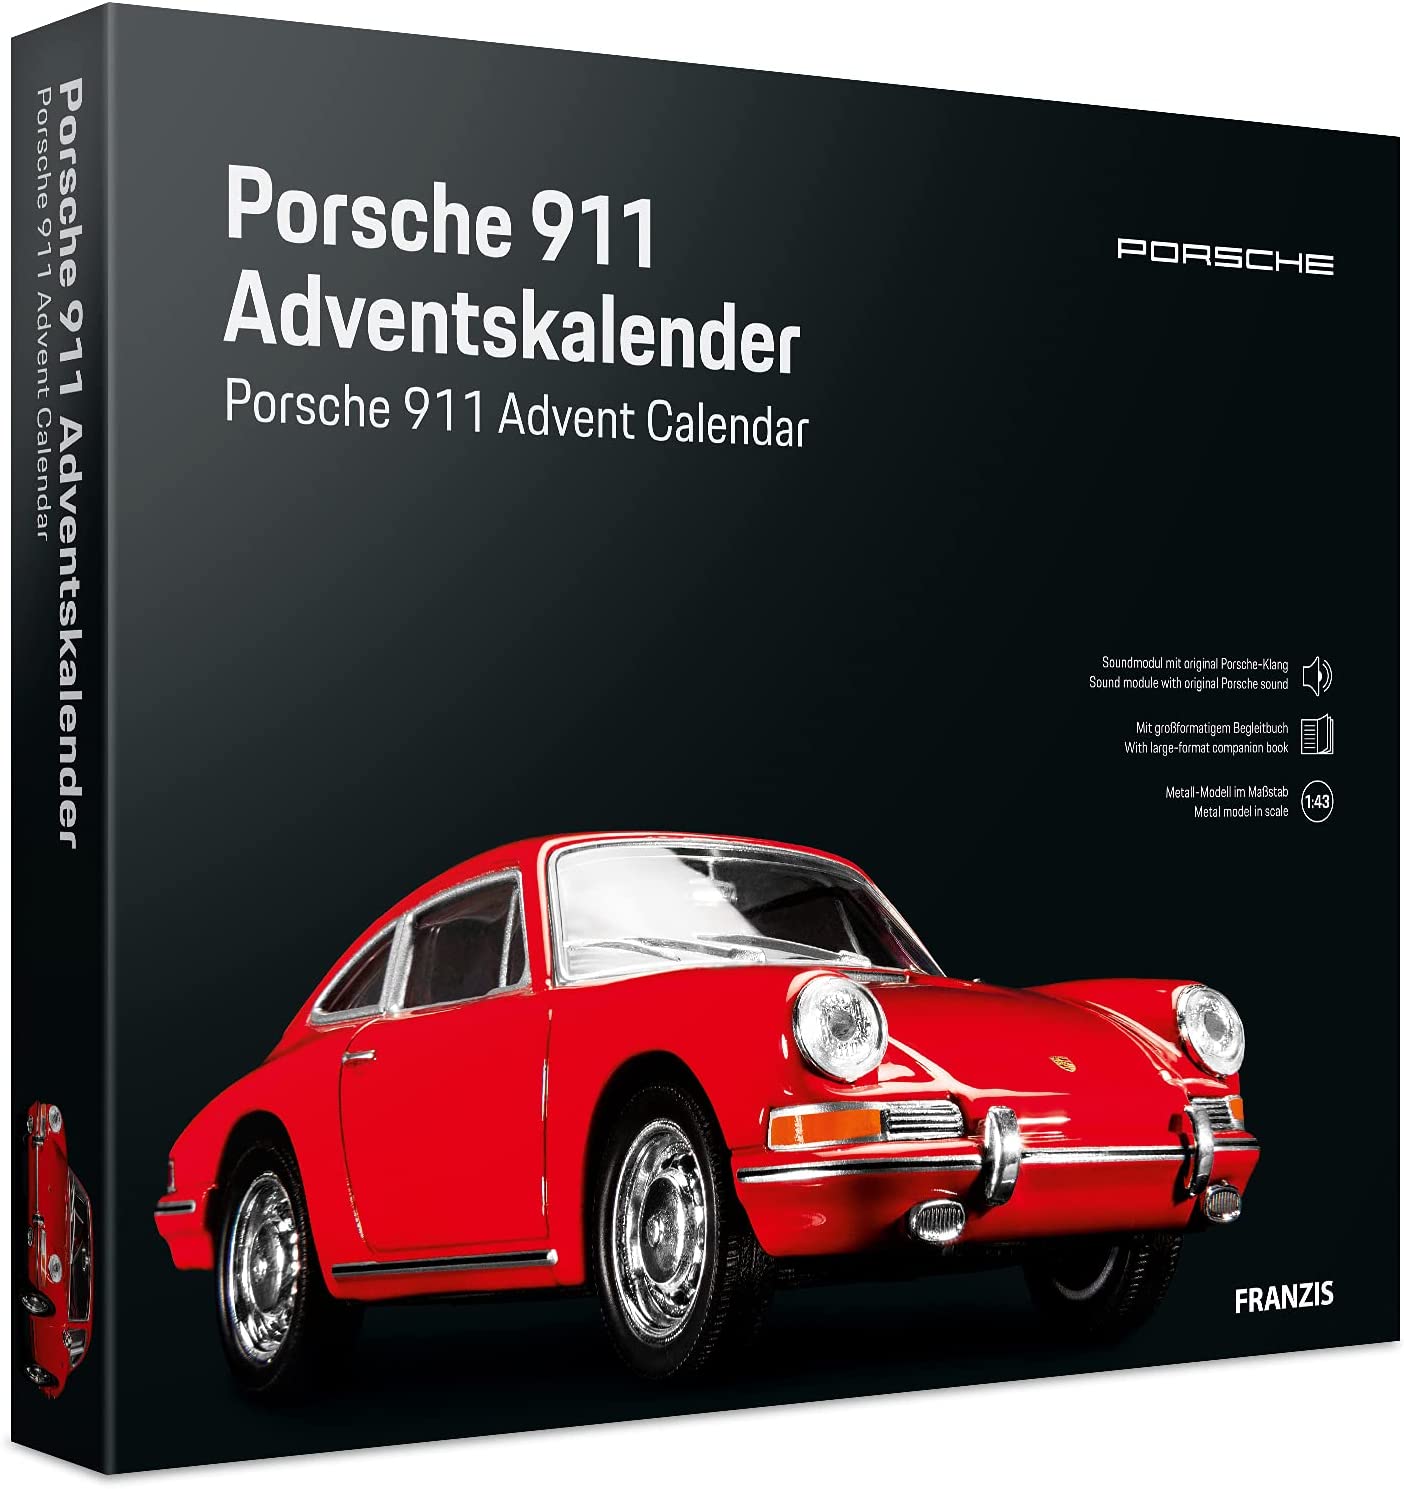 Franzis Porsche 911